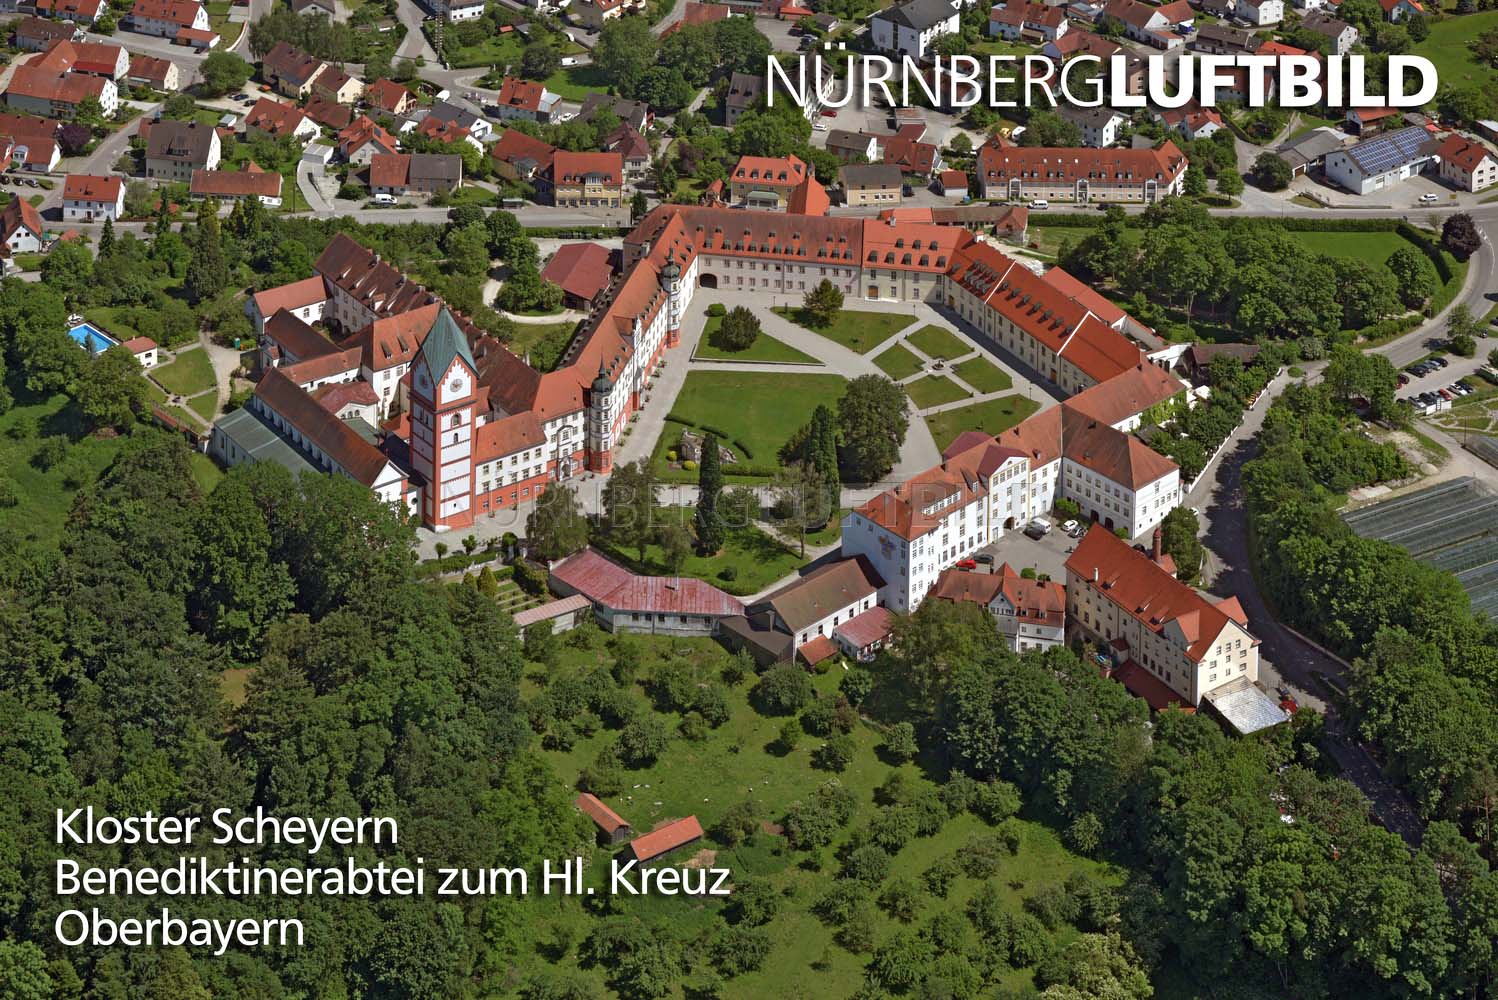 Kloster Scheyern, Benediktinerabtei zum Hl. Kreuz, Luftbild